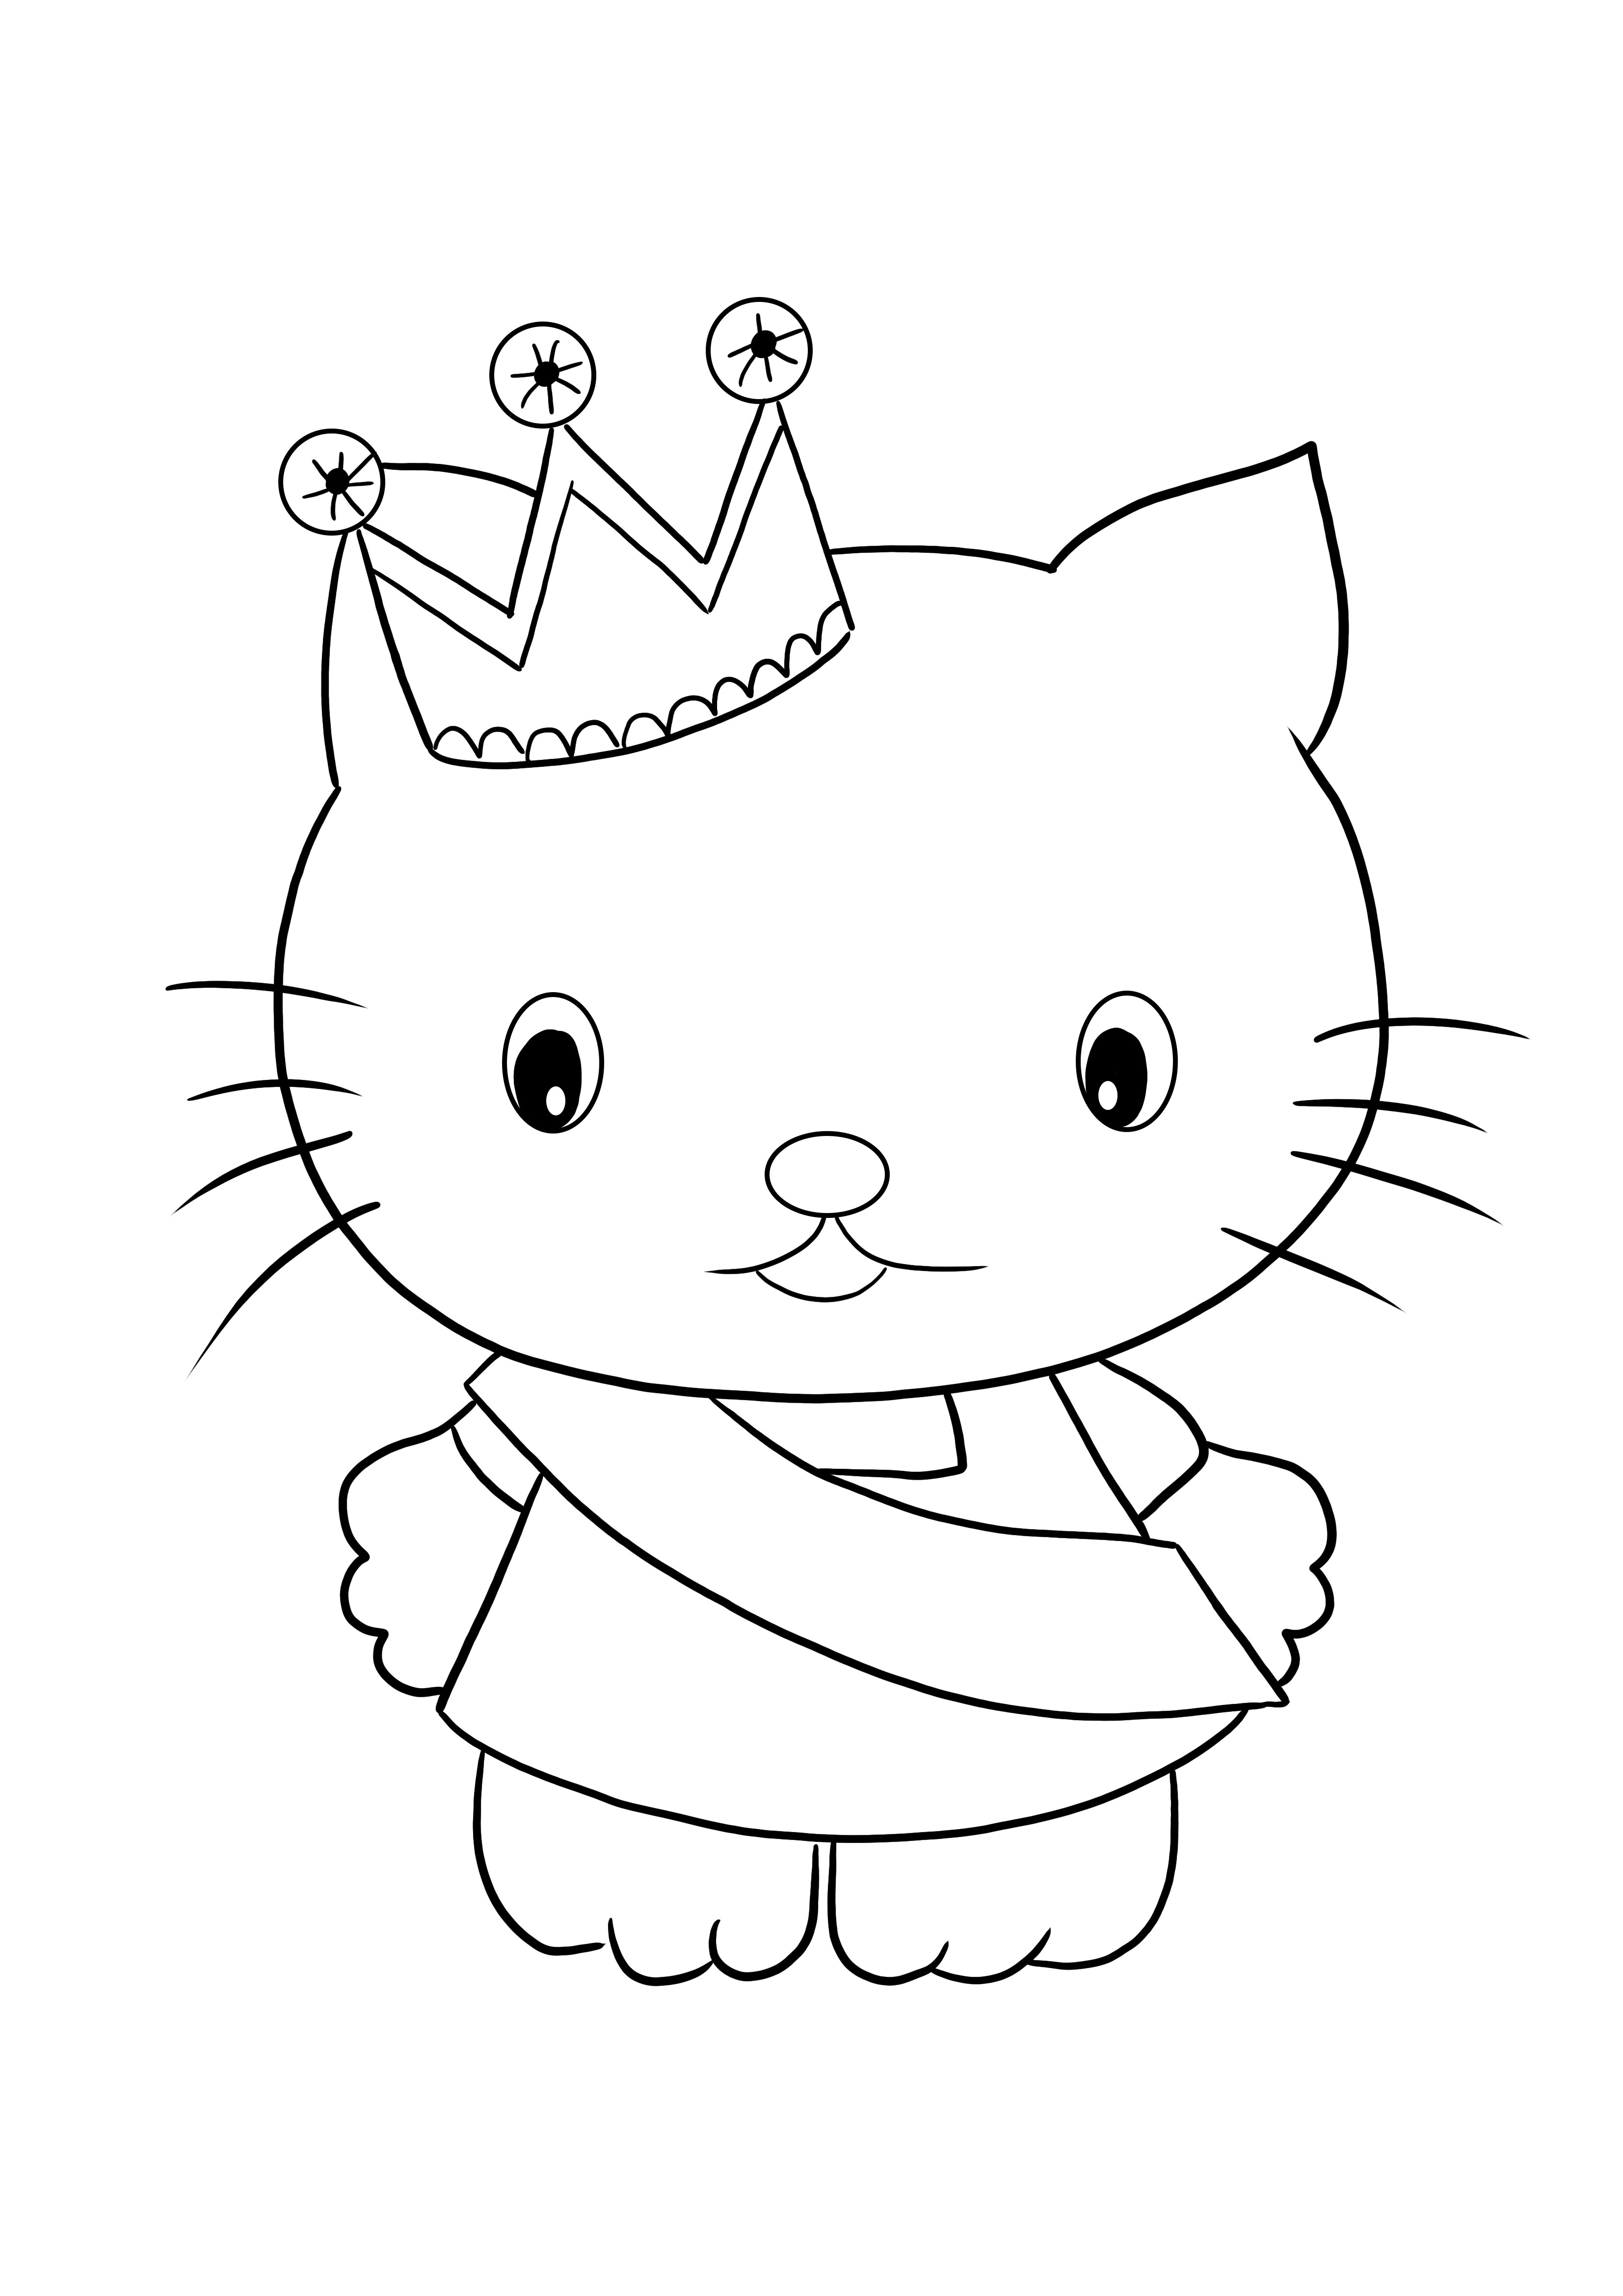 Renklendirmek ve eğlenmek için ücretsiz Hello Kitty Prenses boyama sayfası baskısı